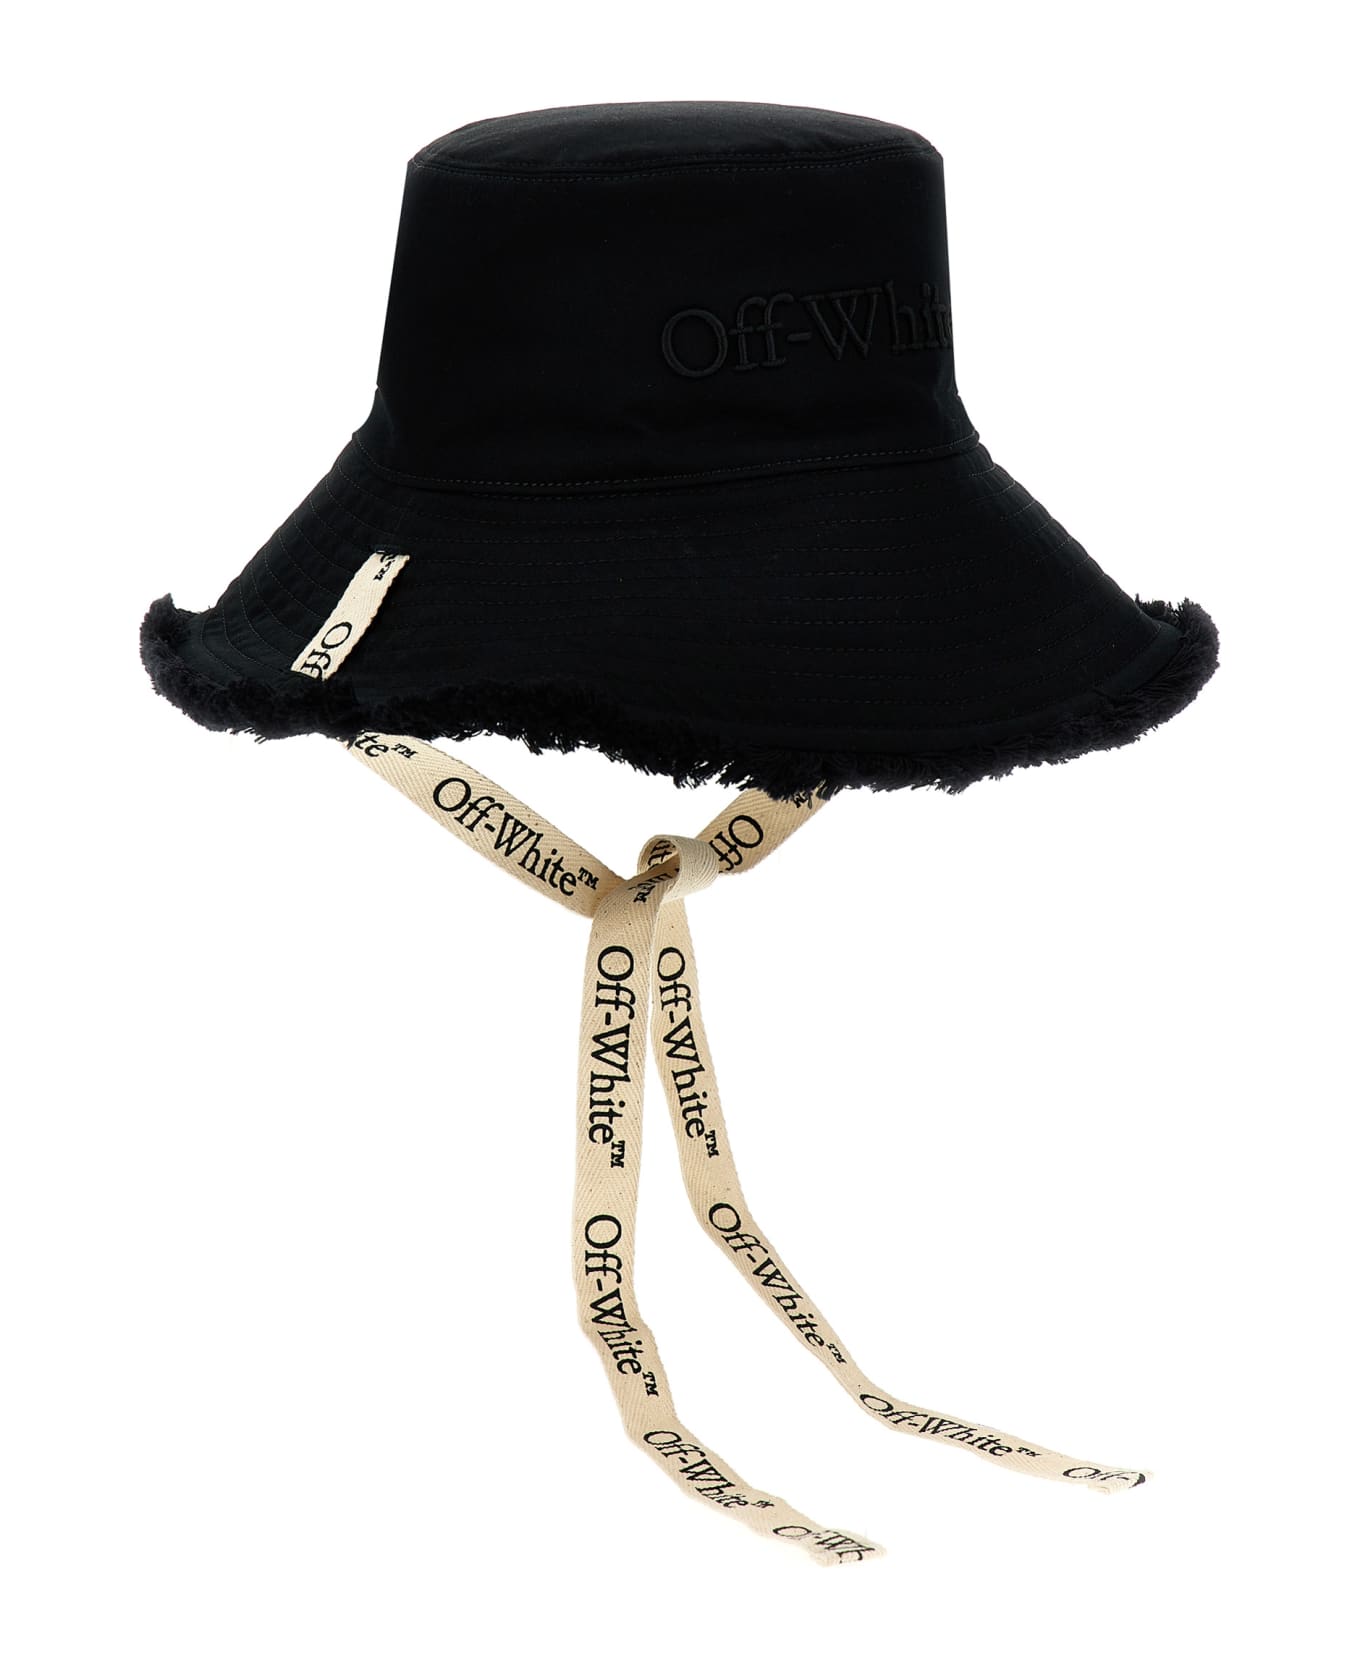 Off-White Bucket Heat Hat - Black